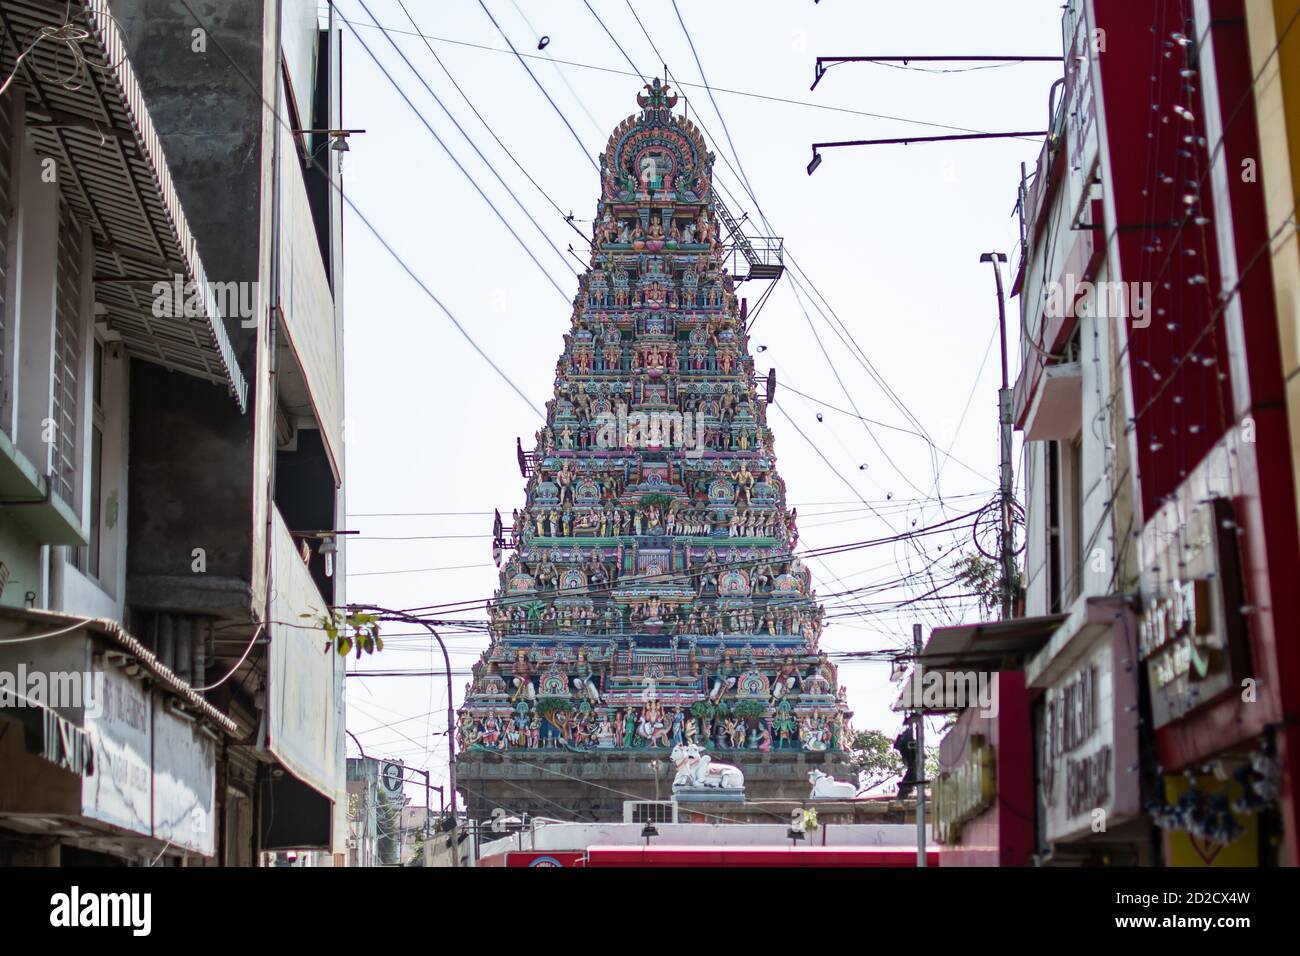 Chennai, India - 8 febbraio 2020: Vista del tempio di Kapaleeshwarar in un giorno coperto l'8 febbraio 2020 a Chennai, India Foto Stock